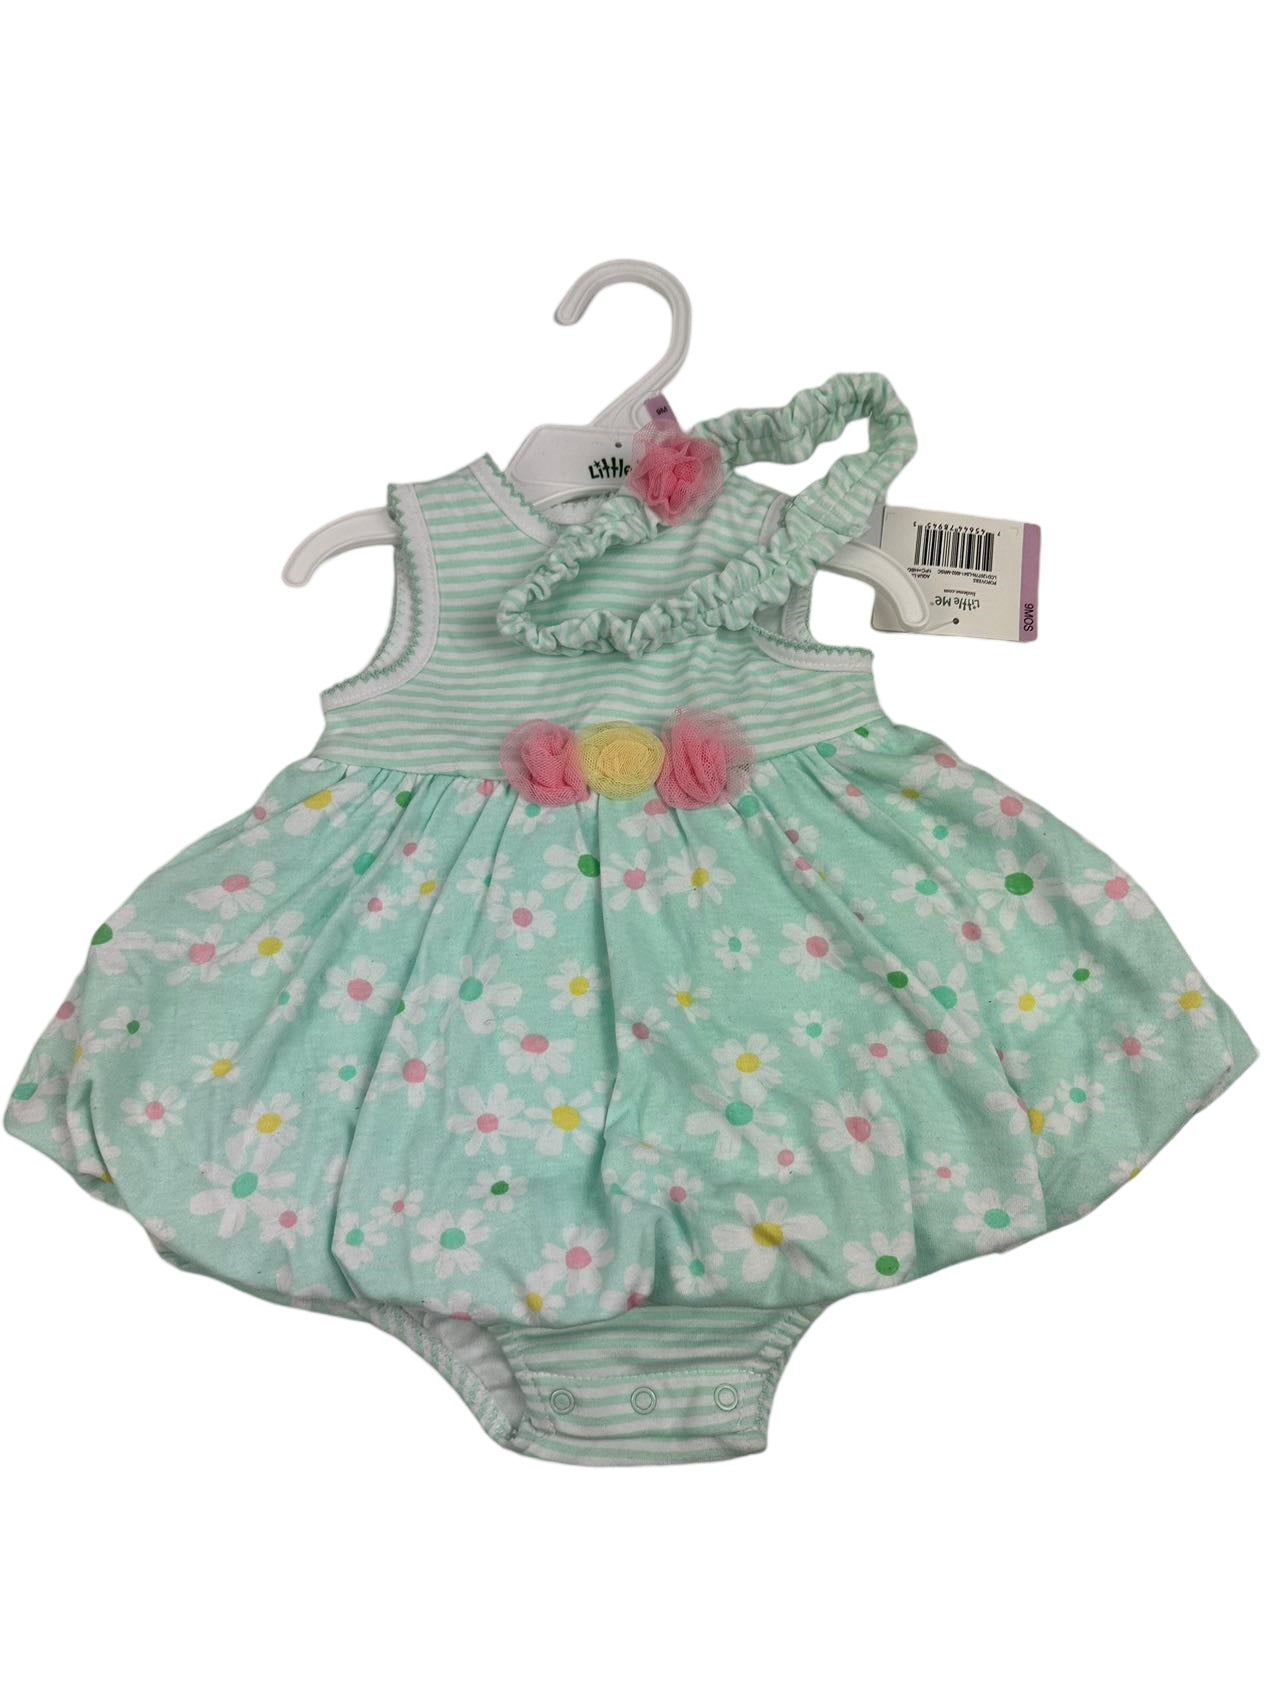 Little Me baby dress (9M)-Unworn